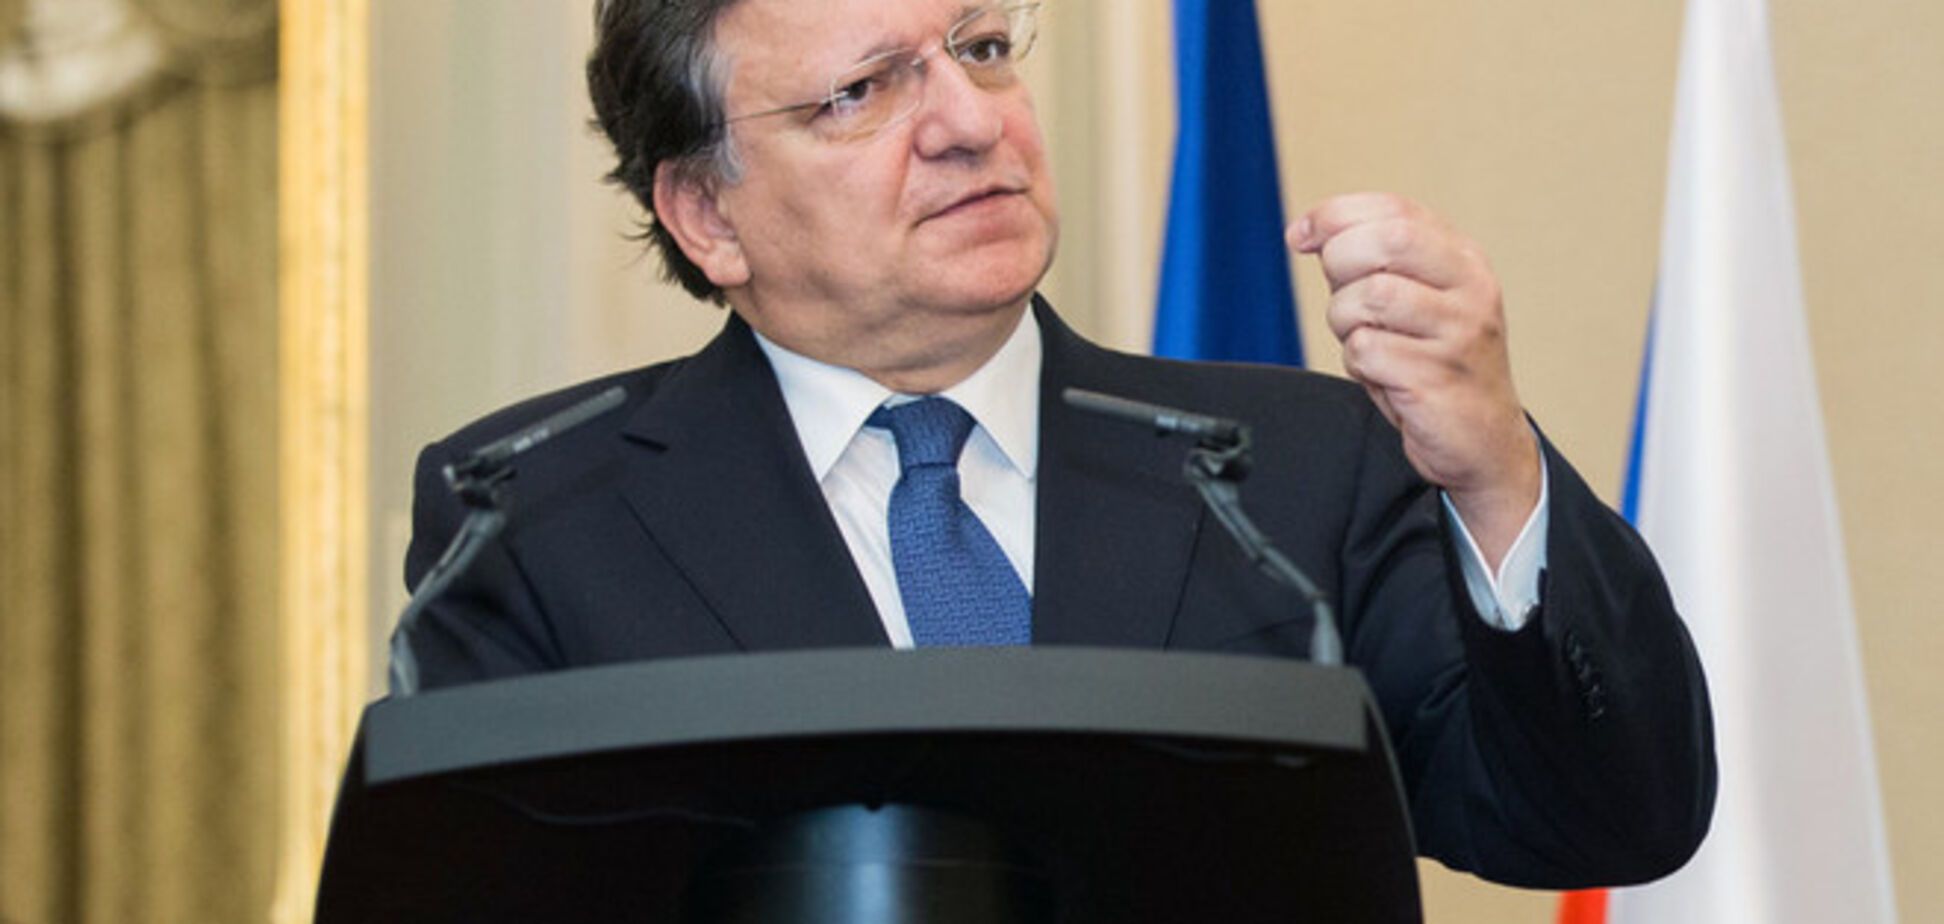 Баррозу надеется, что выборы Президента стабилизируют ситуацию в Украине